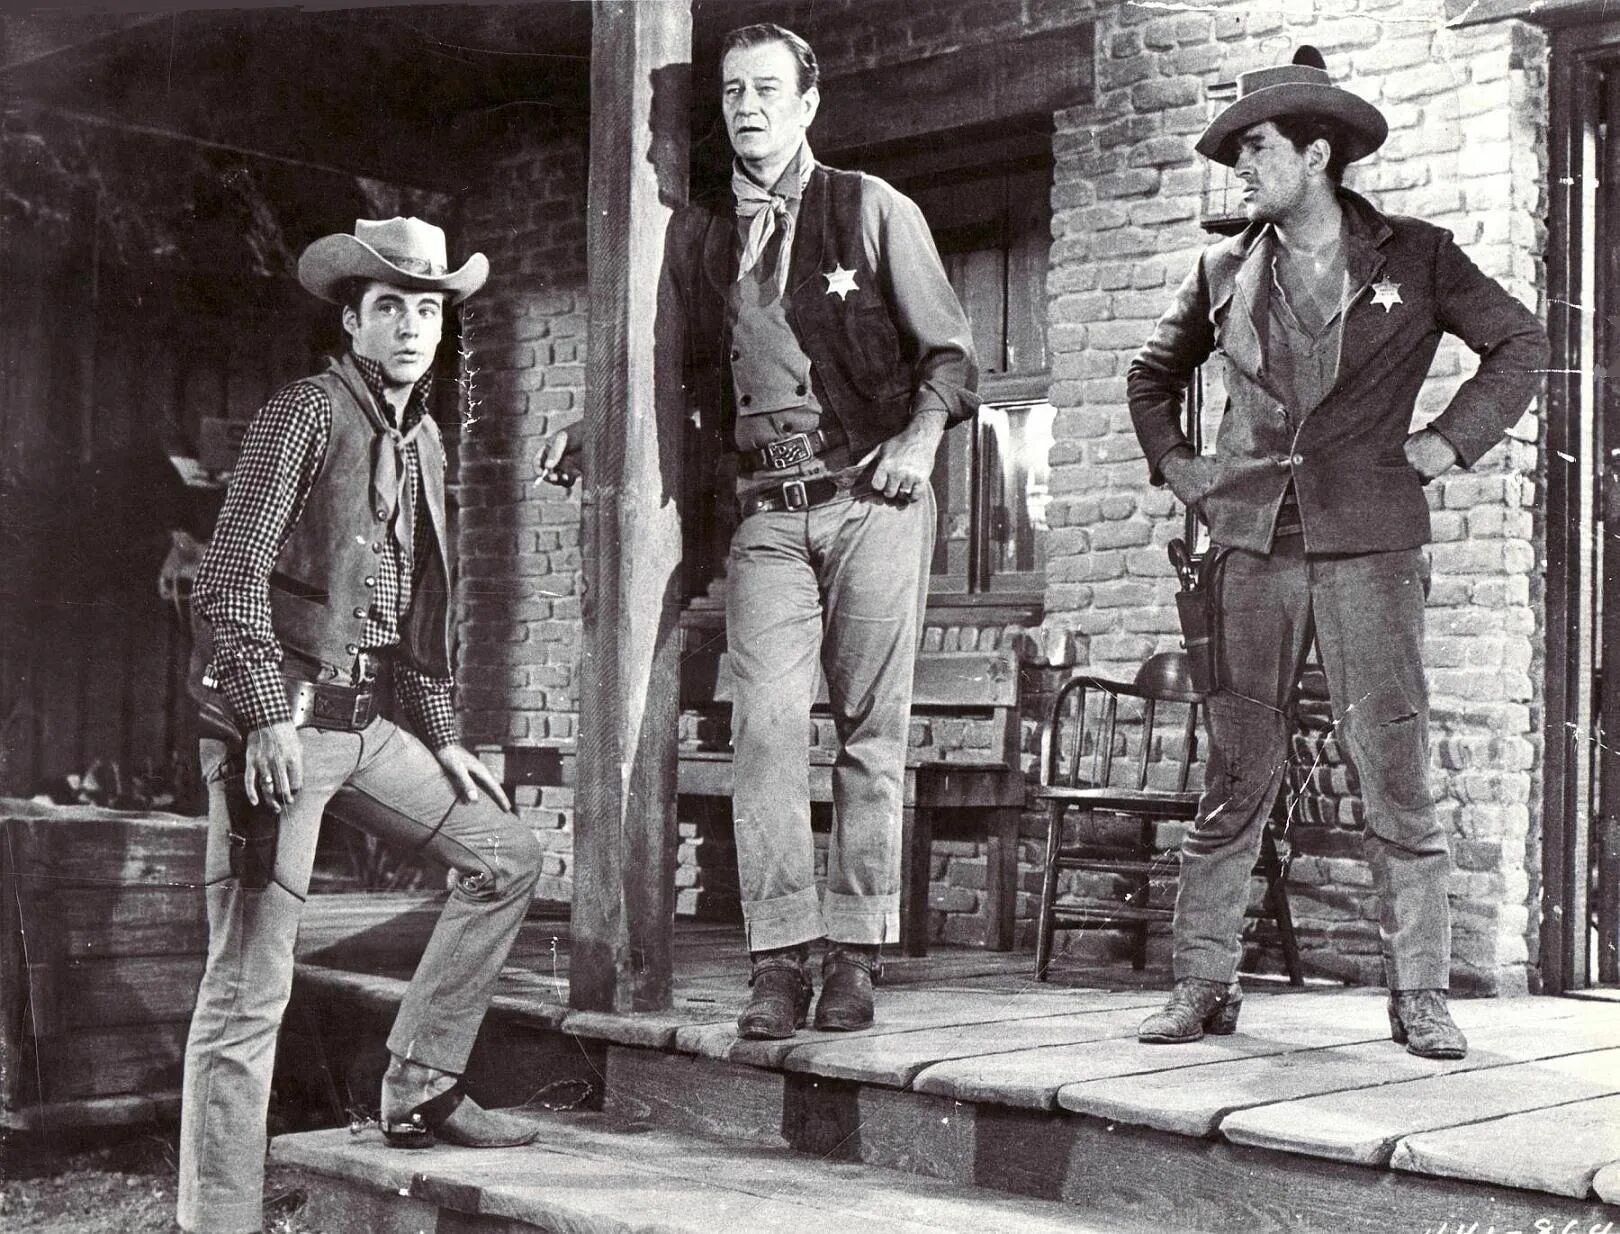 Сентрал вестерн. Rio Bravo 1959. Джон Уэйн Рио Браво. Вестерн Гордона Хоукса «Рио Браво».